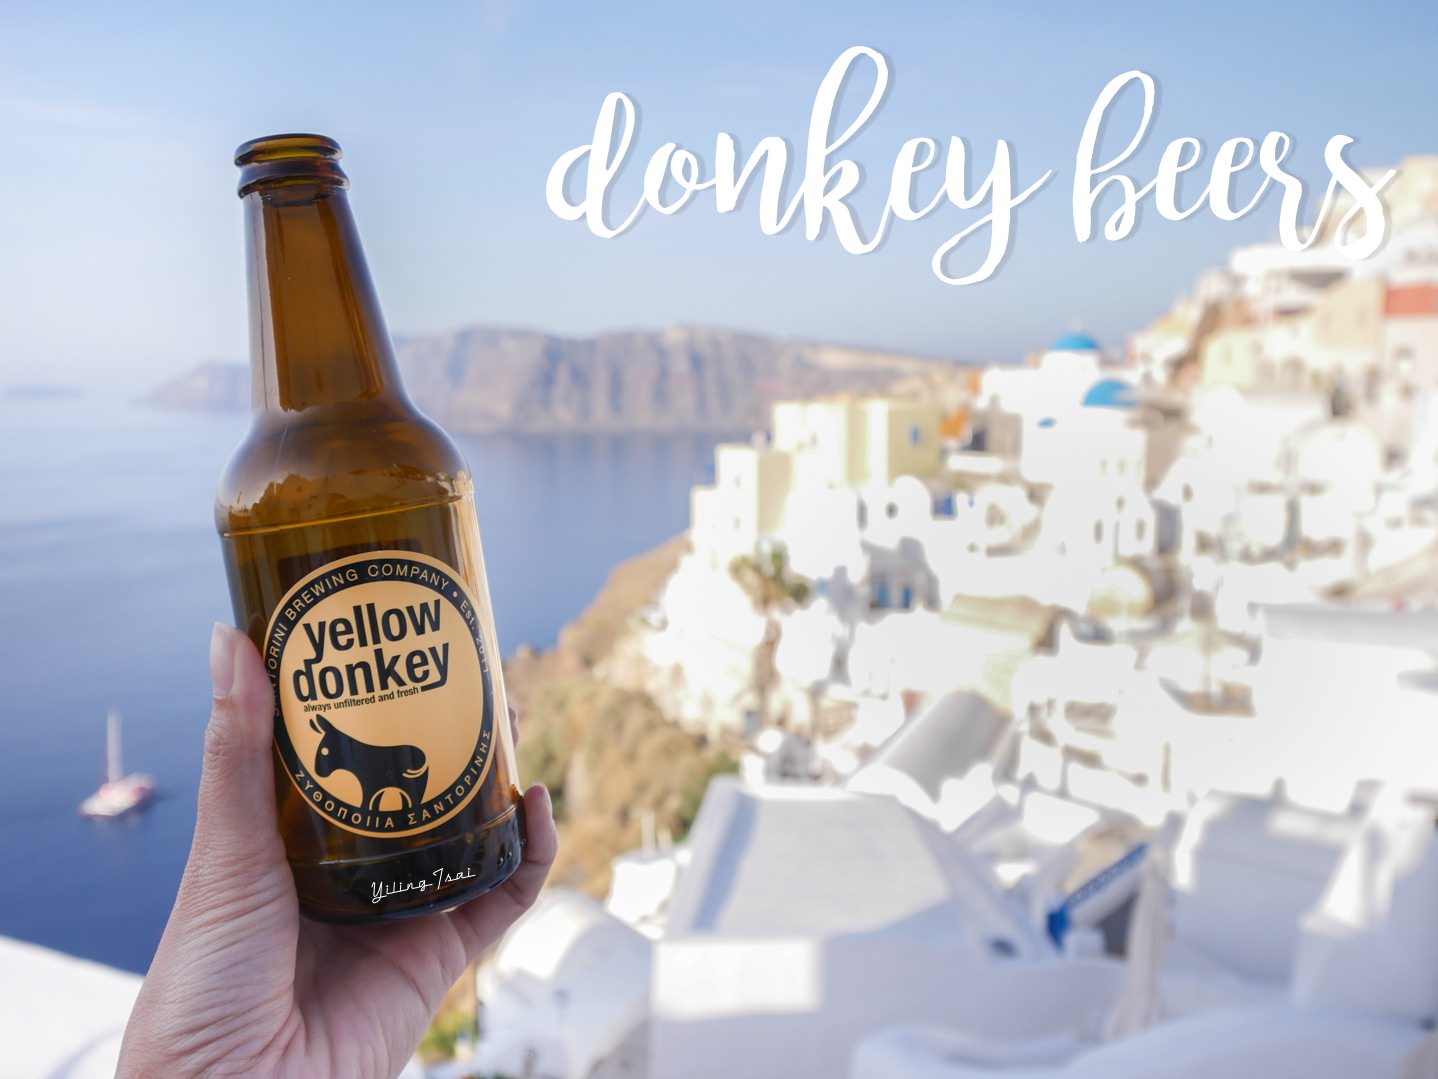 希臘聖托里尼 驢子啤酒廠 donkey beers 聖托里尼必喝